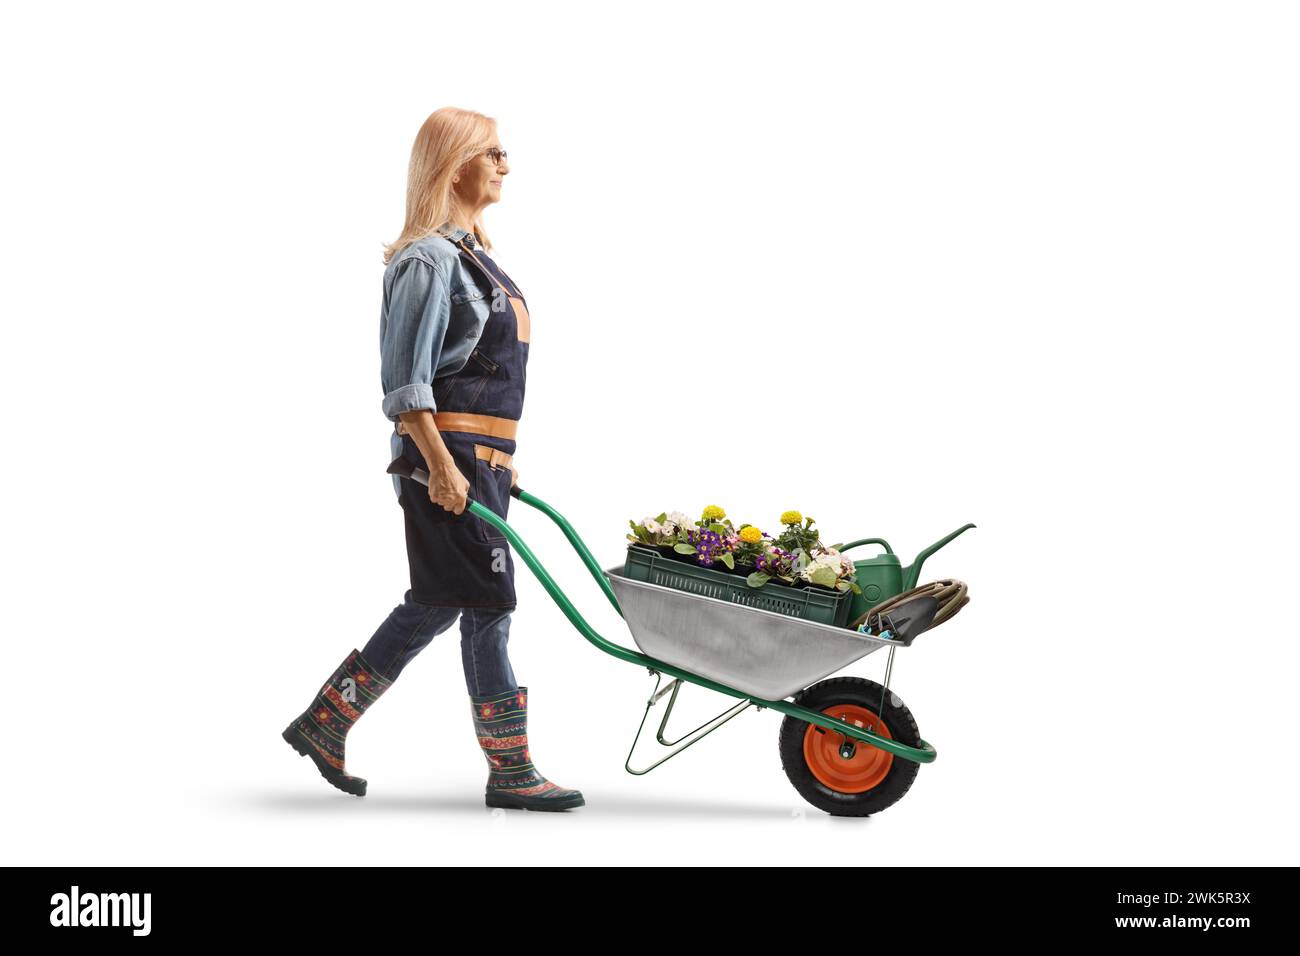 Foto a tutta lunghezza di una donna giardiniere che spinge una carriola con piante e fiori isolati su sfondo bianco Foto Stock